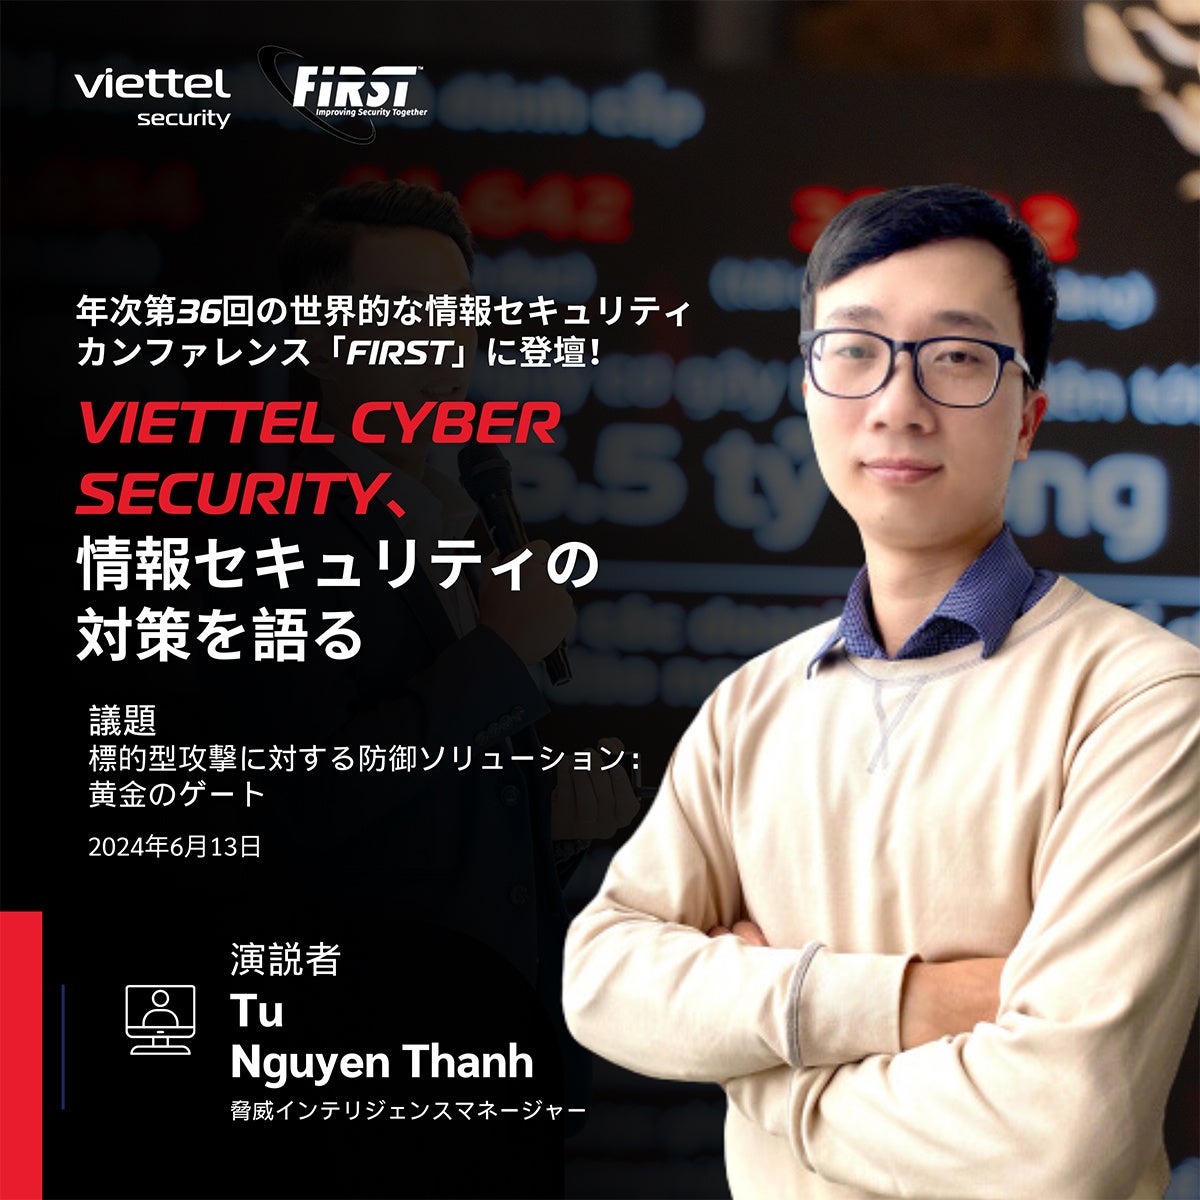 VIETTEL CYBER SECURITYの専門家が世界トップの情報セキュリティカンファレンス「FIRST」で講演